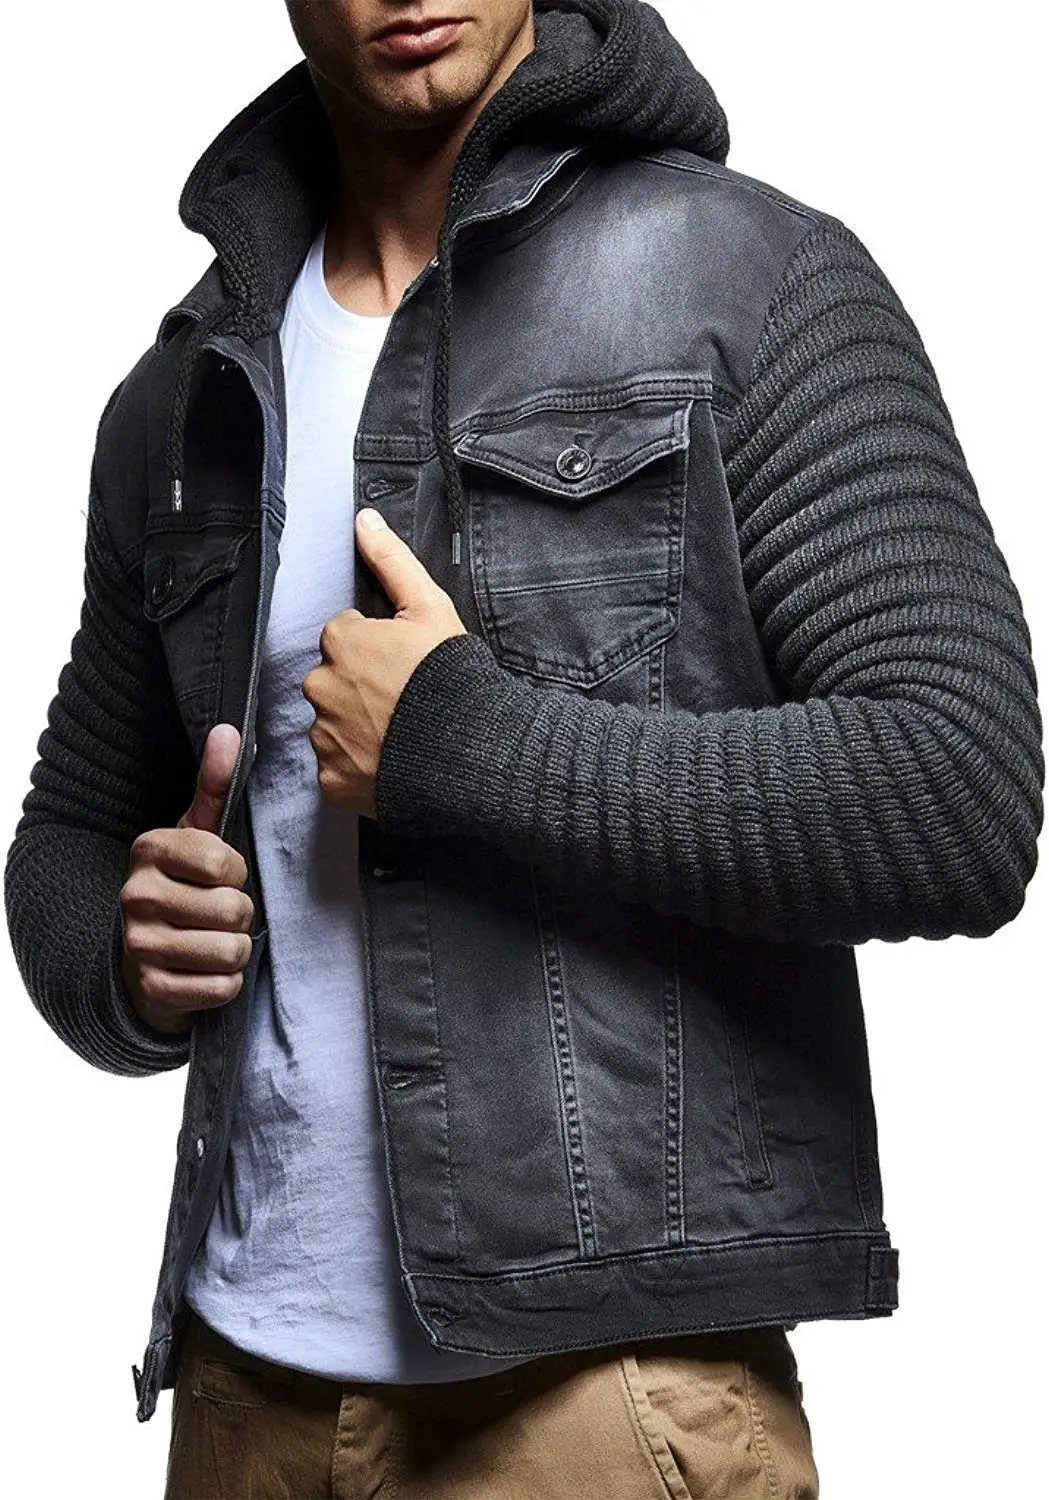 фото мужских вязаных курток с капюшоном